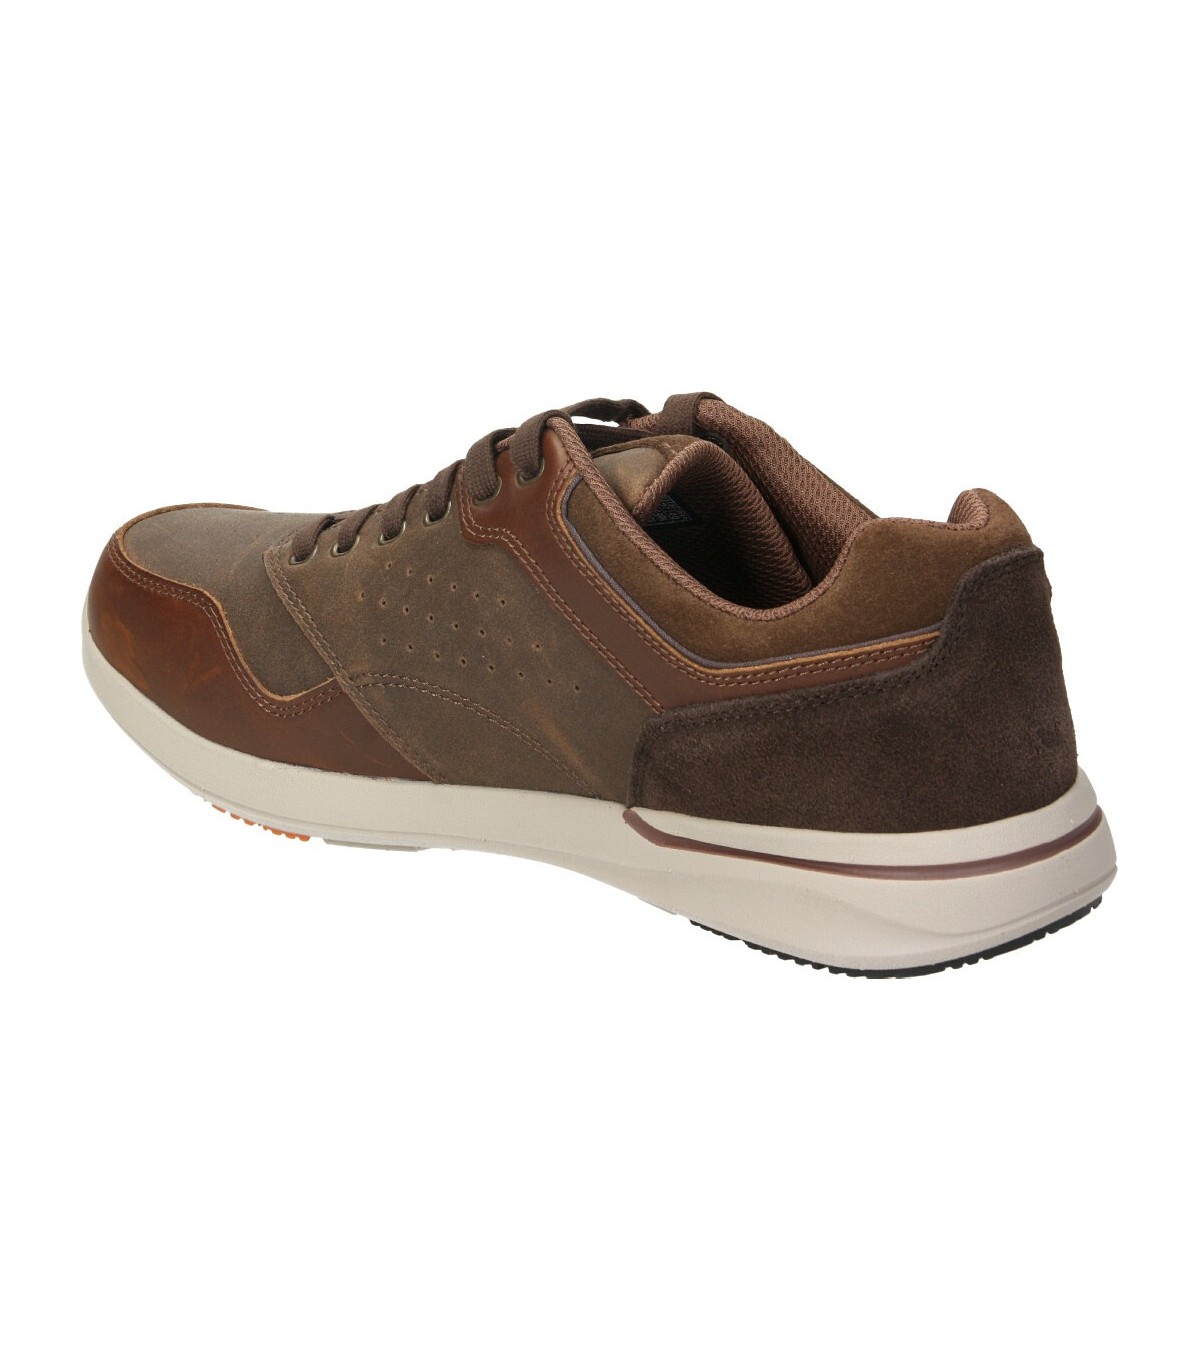 Zapatos marron de casual skechers 65406-brn